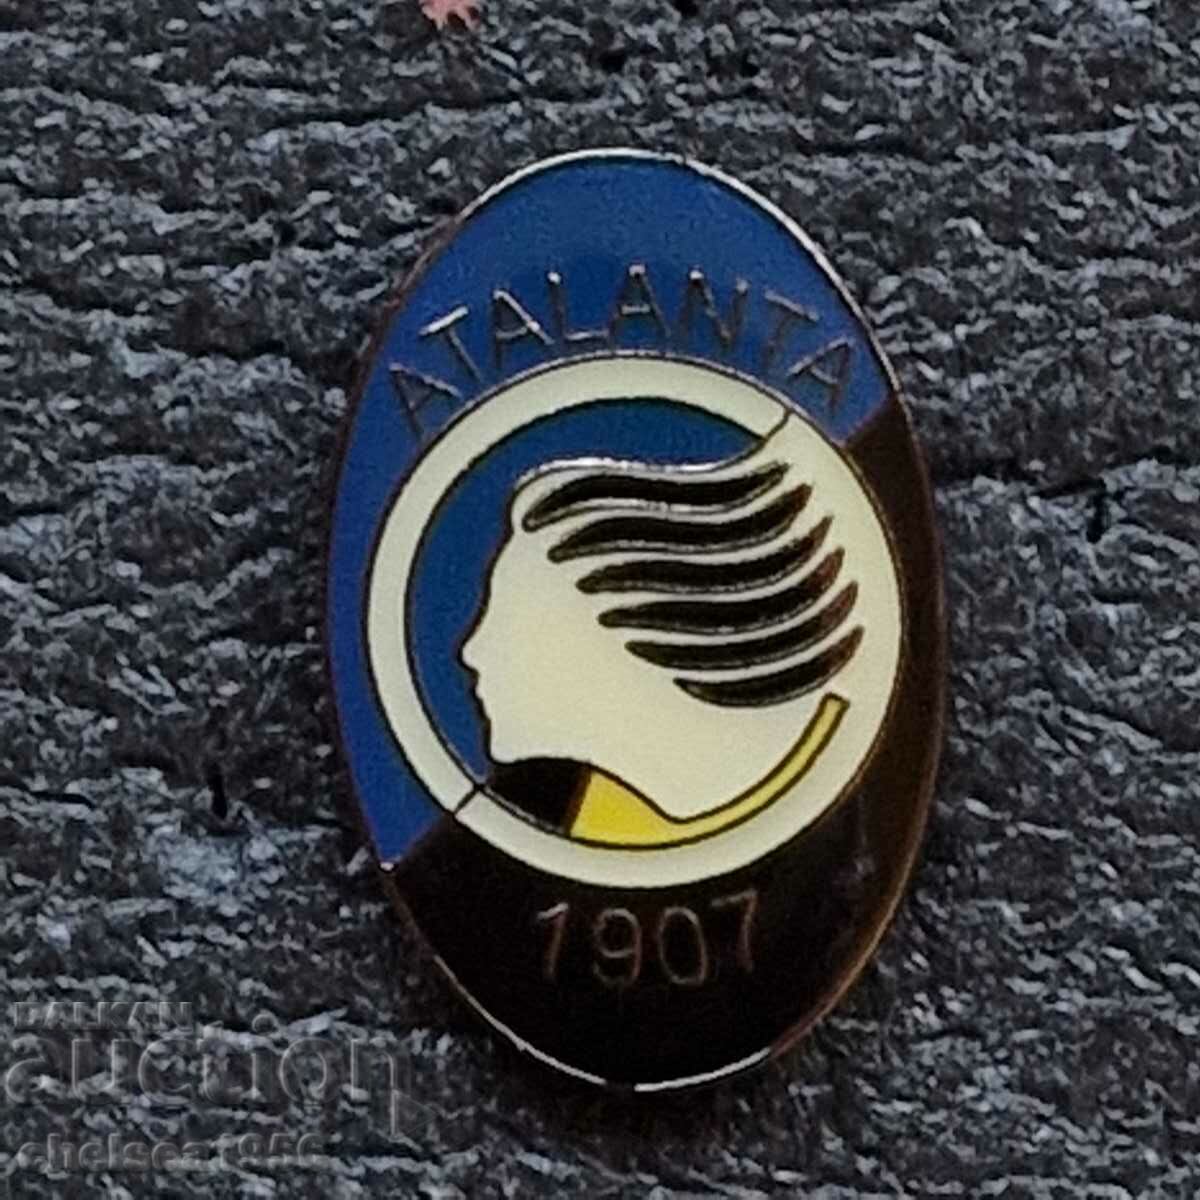 Atalanta Italy badge